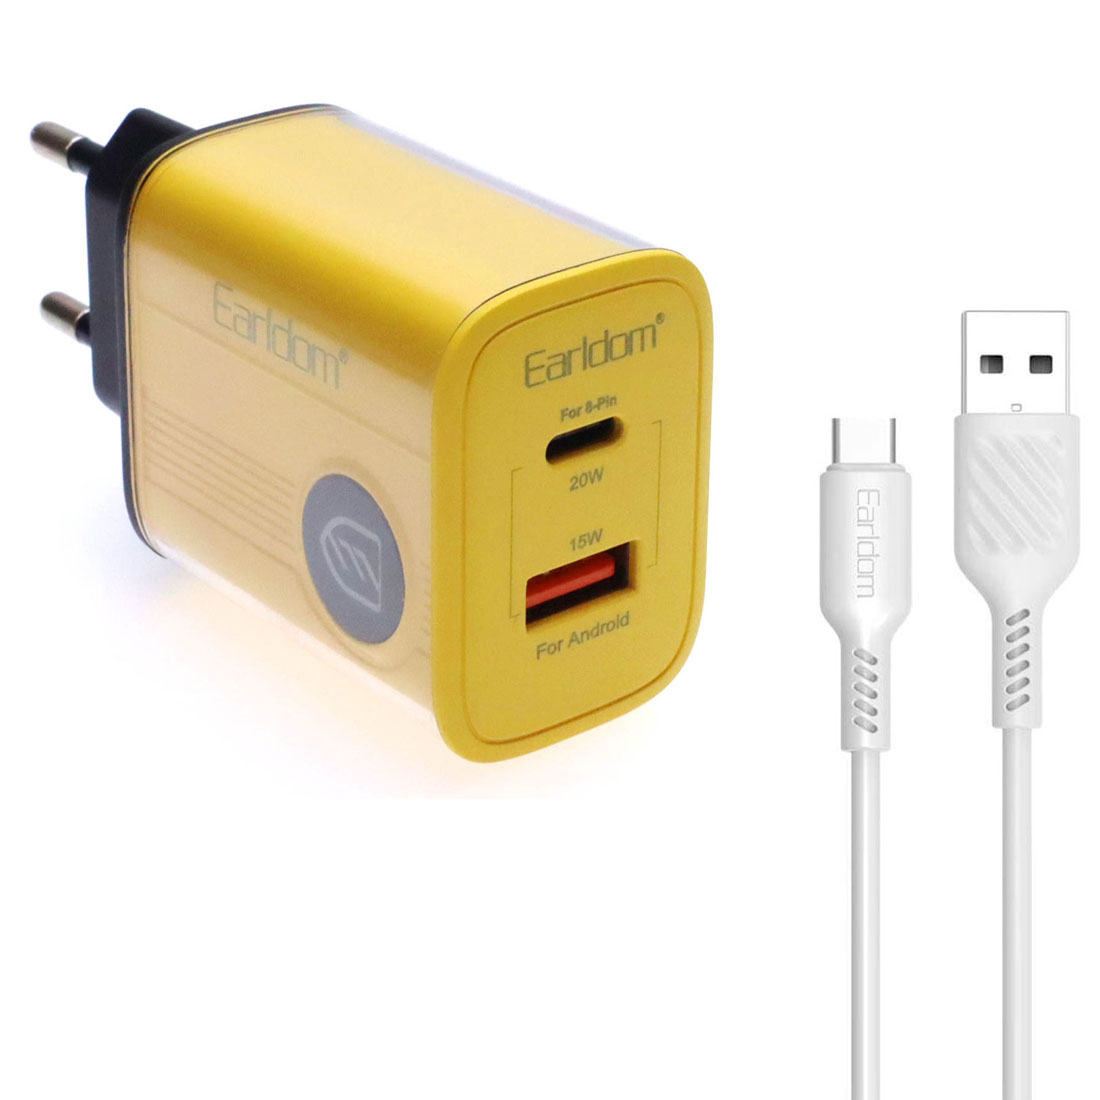 СЗУ (Сетевое зарядное устройство) EARLDOM ES-EU40C с кабелем USB Type C, PD20W, QC3.0 15W, 1 USB, 1 USB Type C, длина 1 метр, цвет черно желтый